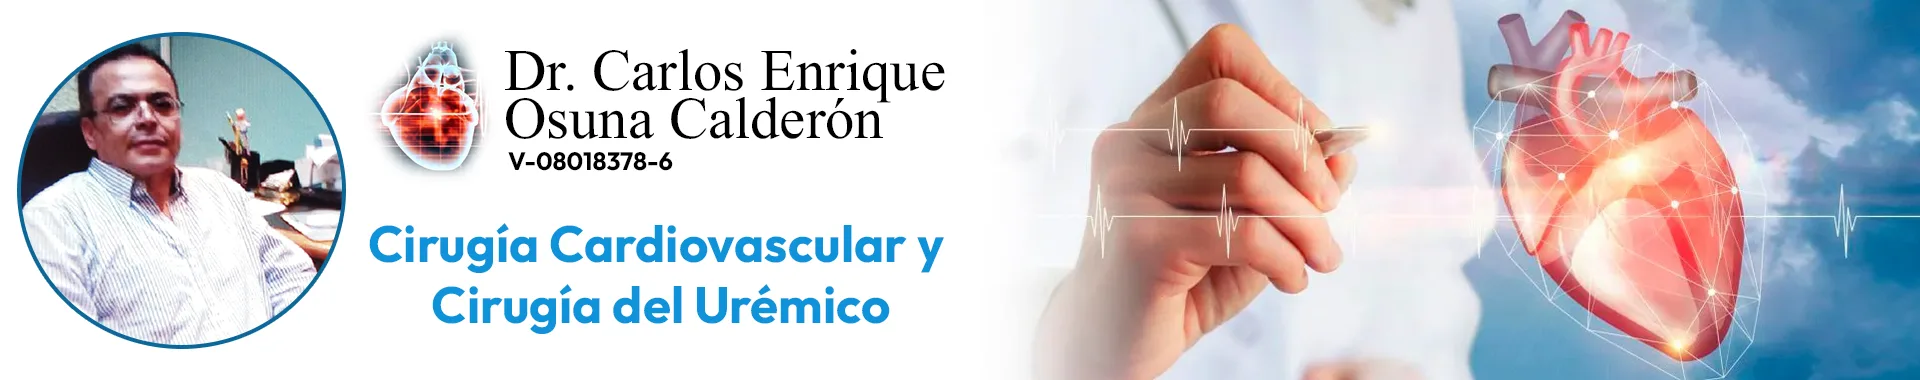 Imagen 1 del perfil de Dr. Carlos Enrique Osuna Calderón